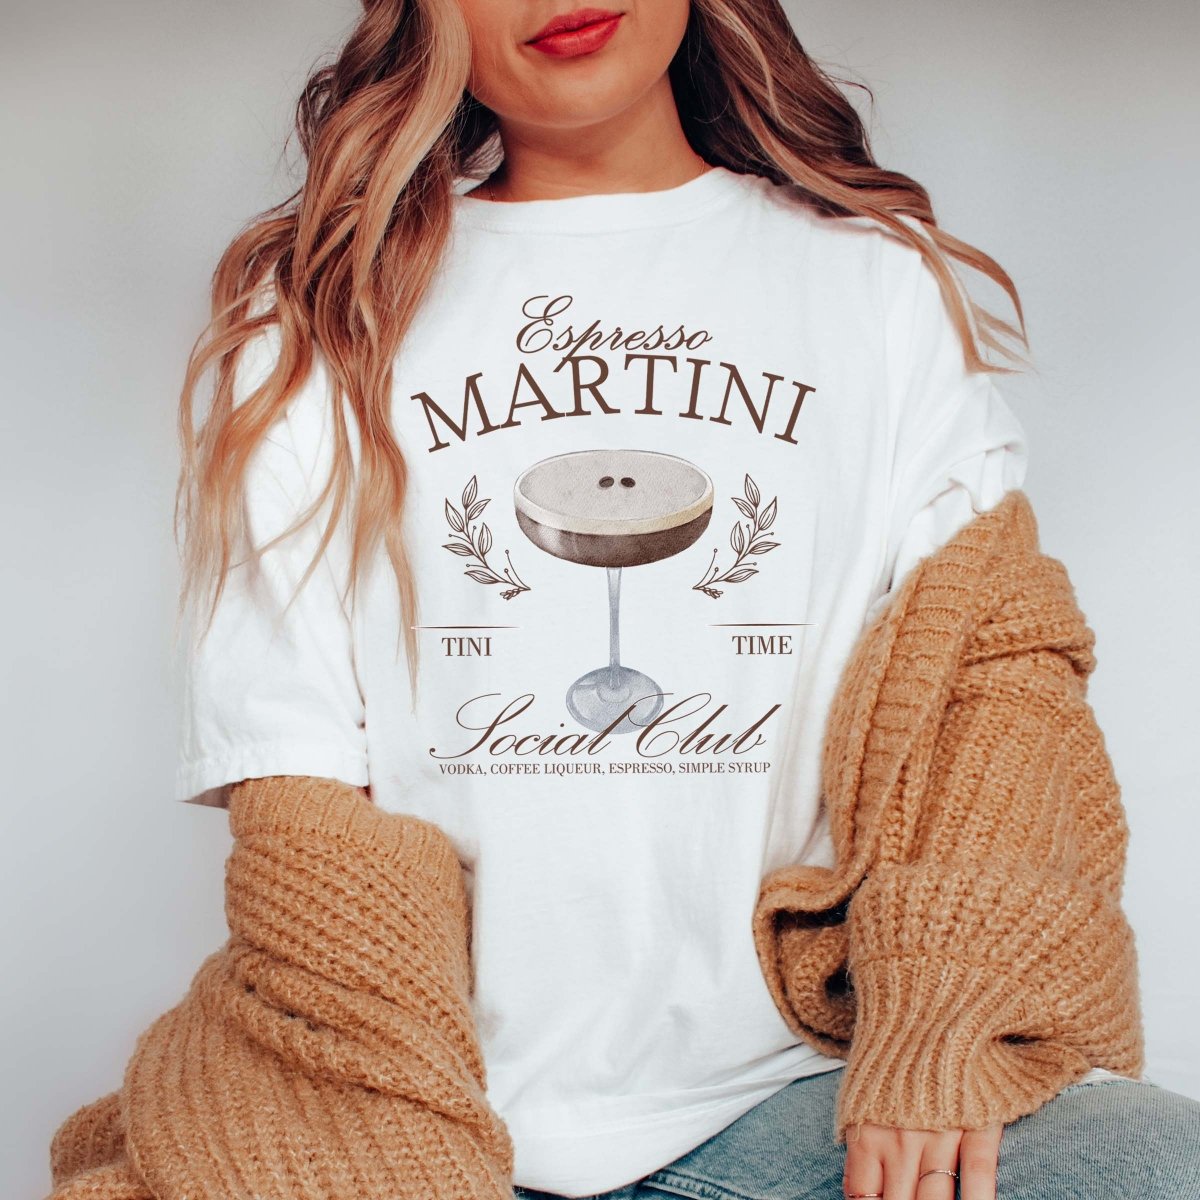 The Espresso Martini – The Martini Socialist